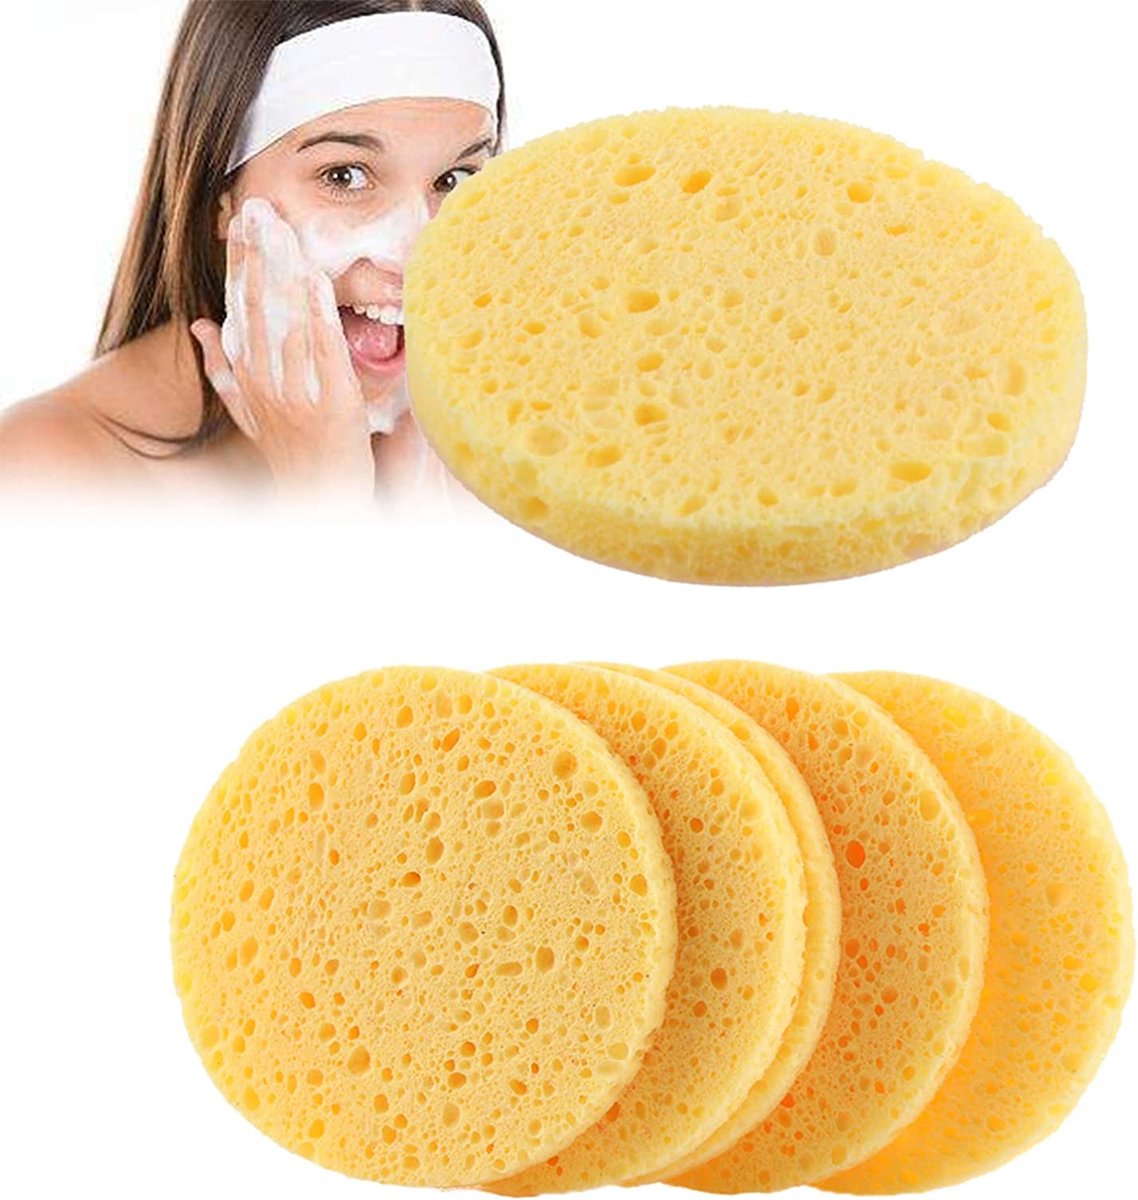 Pak van 20 Gezichtsmake-up spons Natuurlijke make-up verwijderaar spons Herbruikbare ronde gezichtsspons Natuurlijke reinigingsspons voor gezichtsreiniging Make-upverwijdering